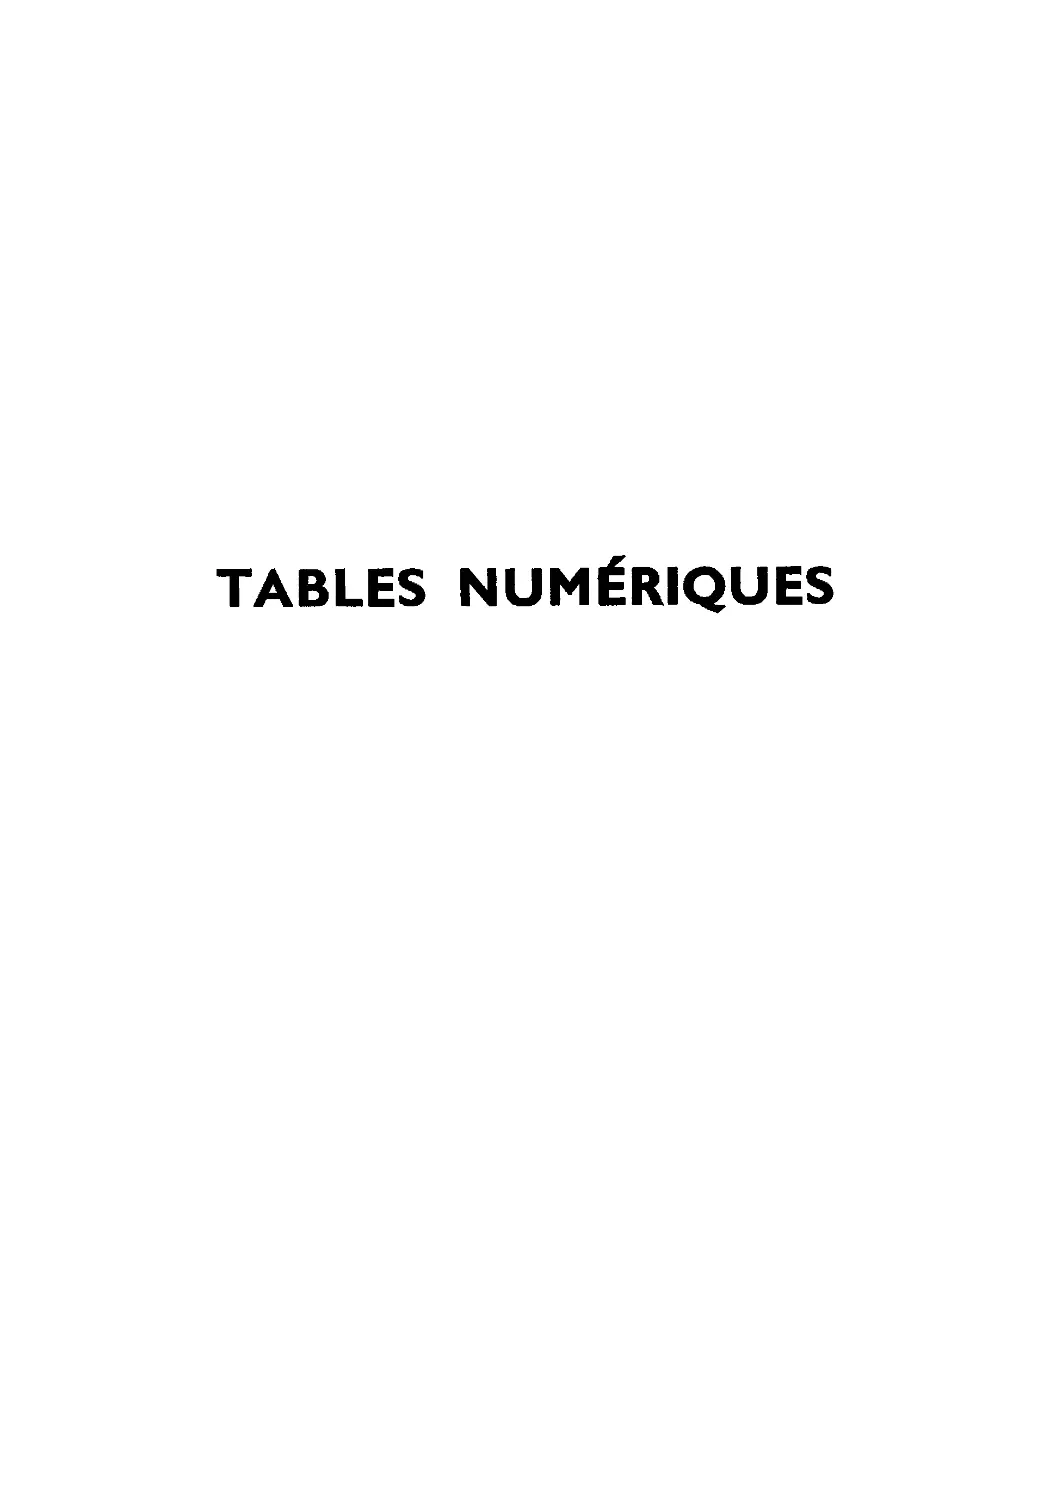 Tables numériques